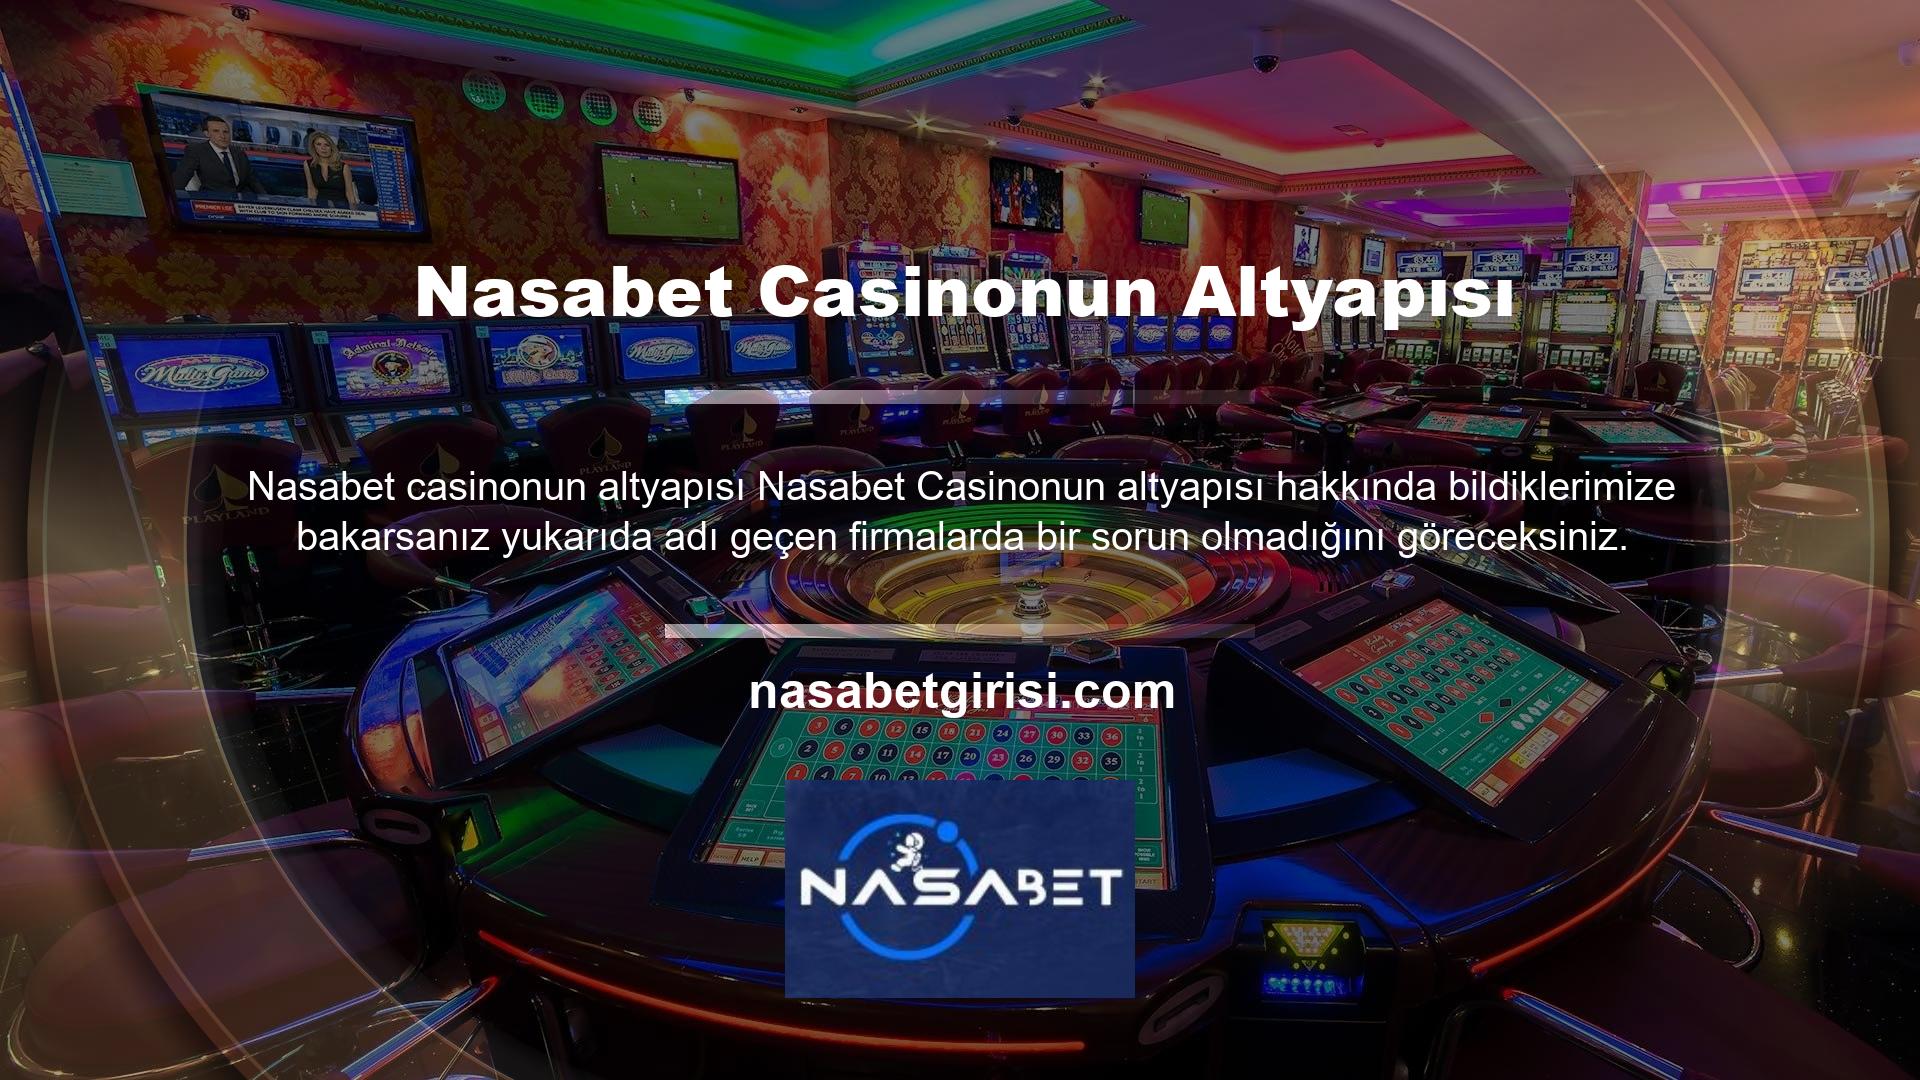 Casinolar Nasabet altyapısından dolayı sorun mu yaşıyor? Teknik sorun yok, donma sorunu yok, bağlantı veya bağlantı sorunu yok, araziyle ilgili sorun yok